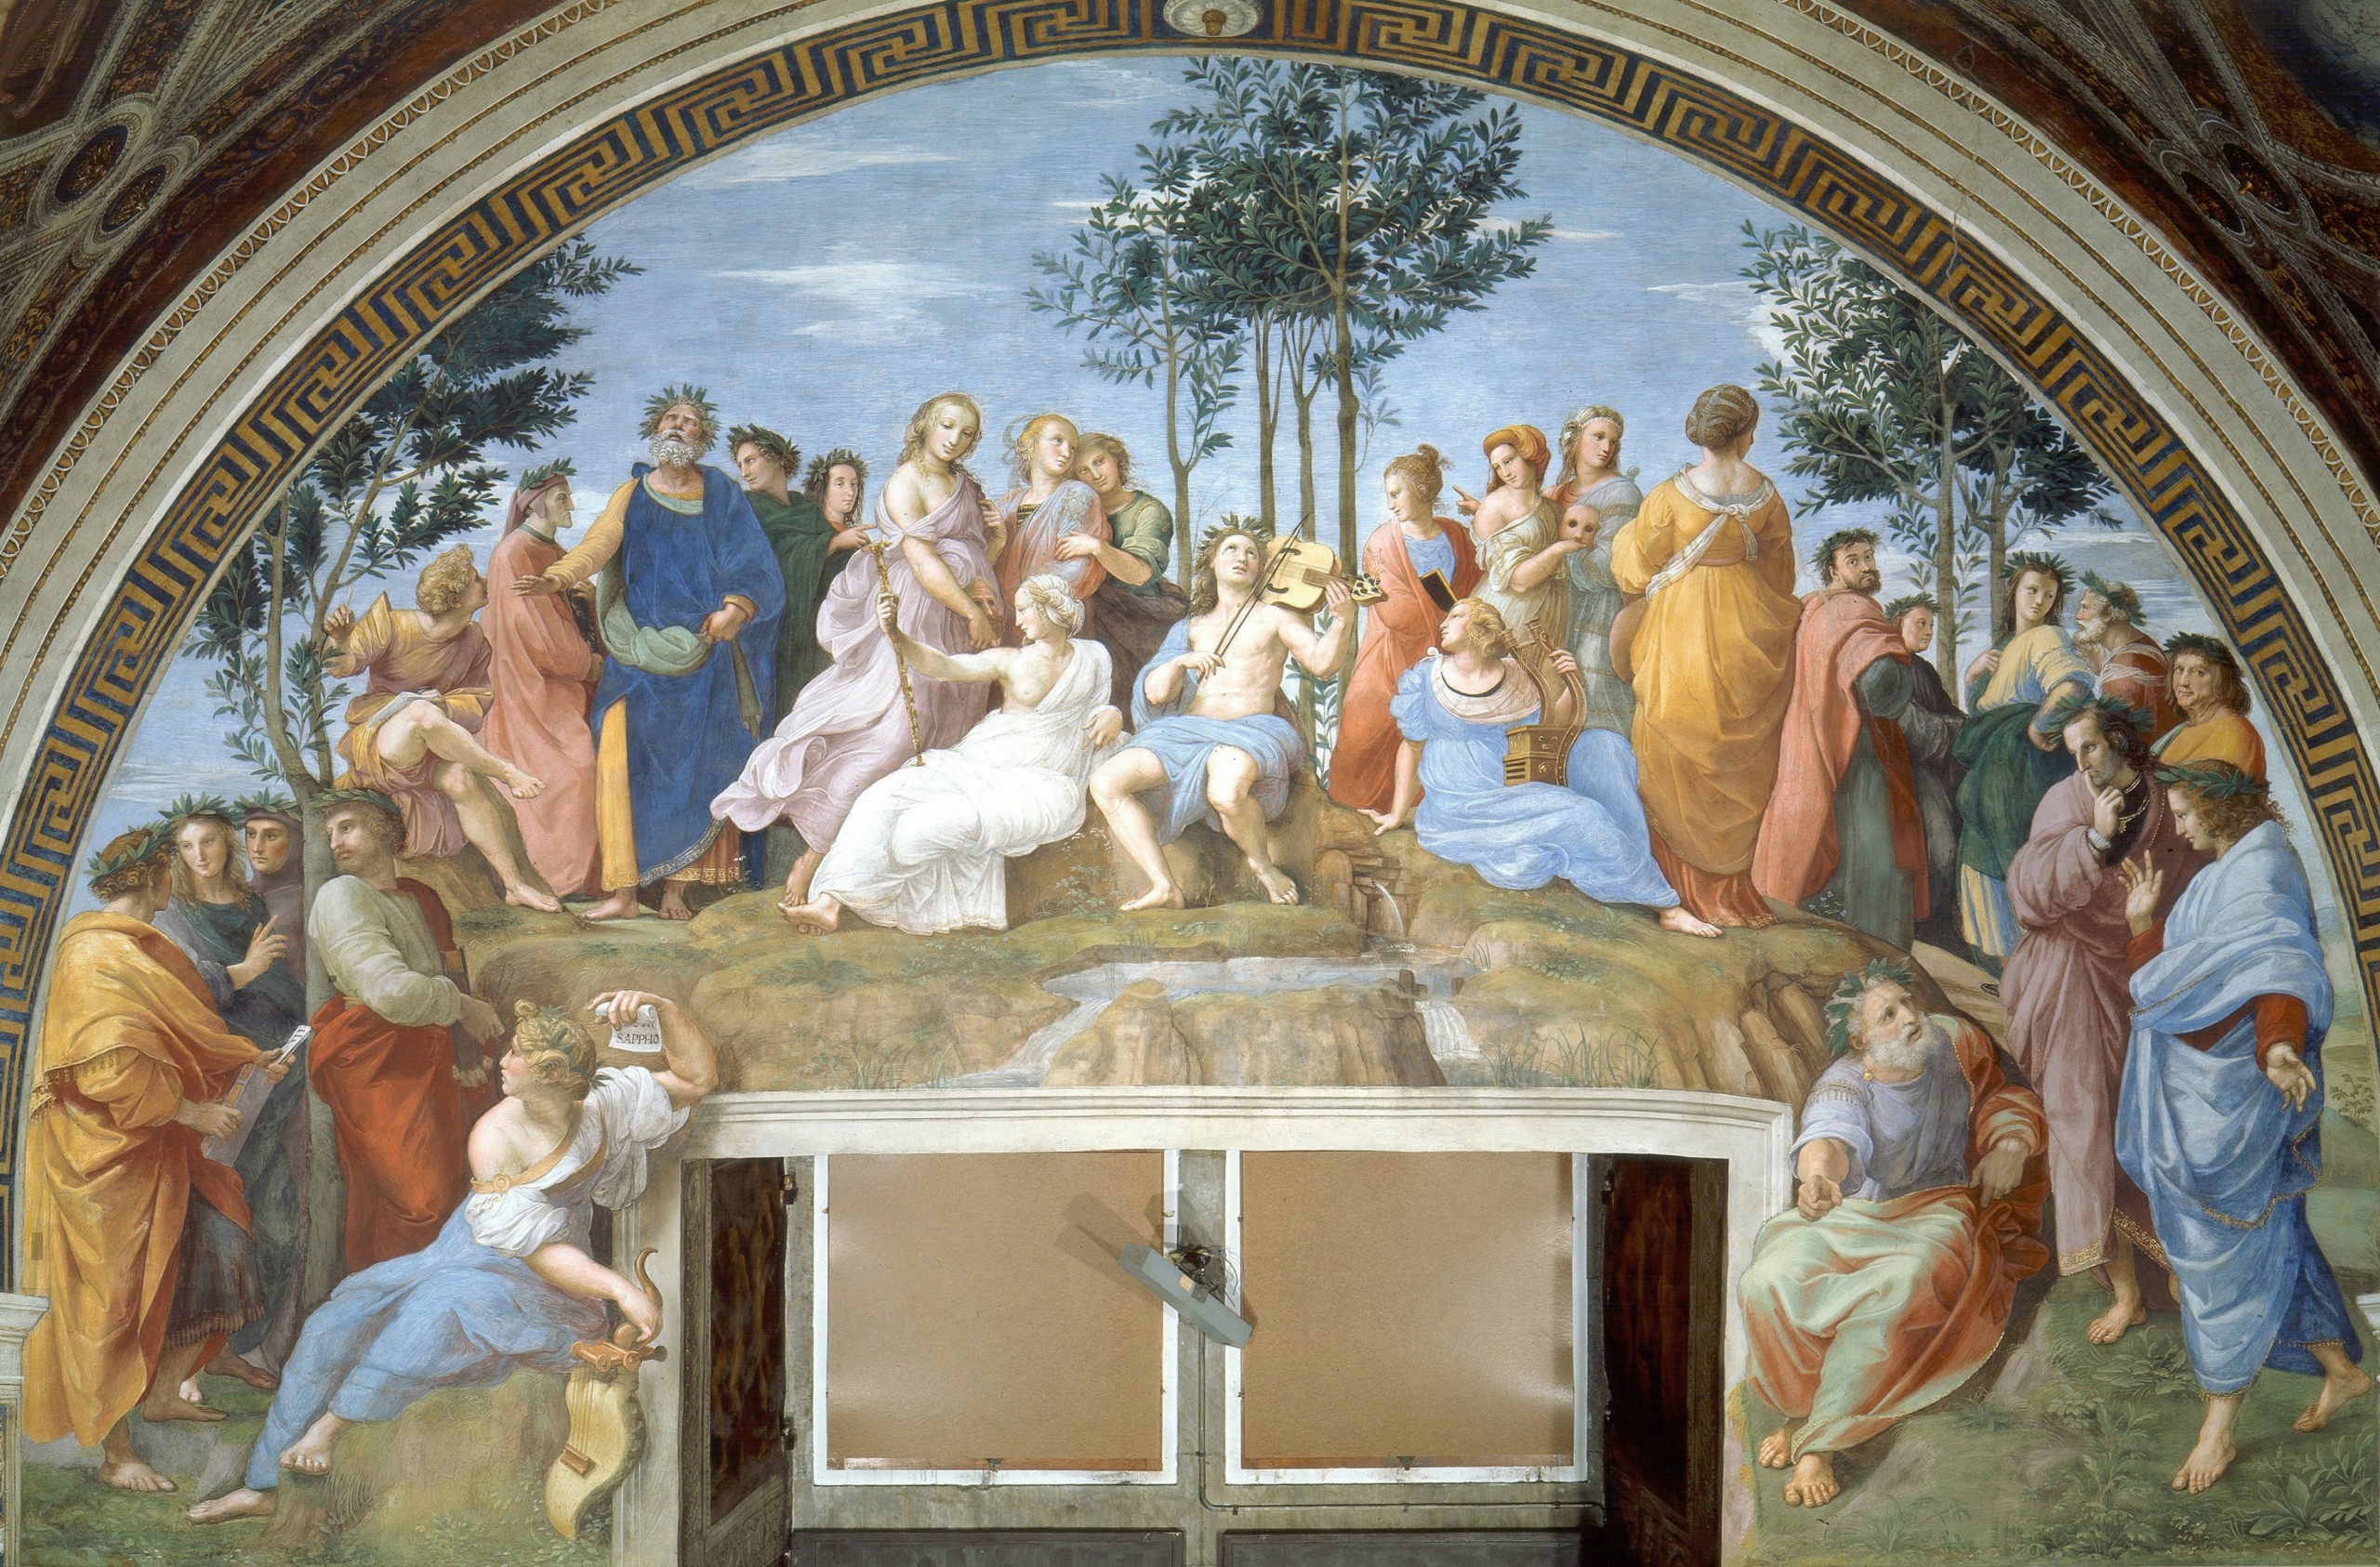 Bức tranh “The Parnassus” của danh họa Raphael, năm 1511, trong Phòng Raphael tại Bảo tàng Vatican. (Ảnh: Tư liệu công cộng)